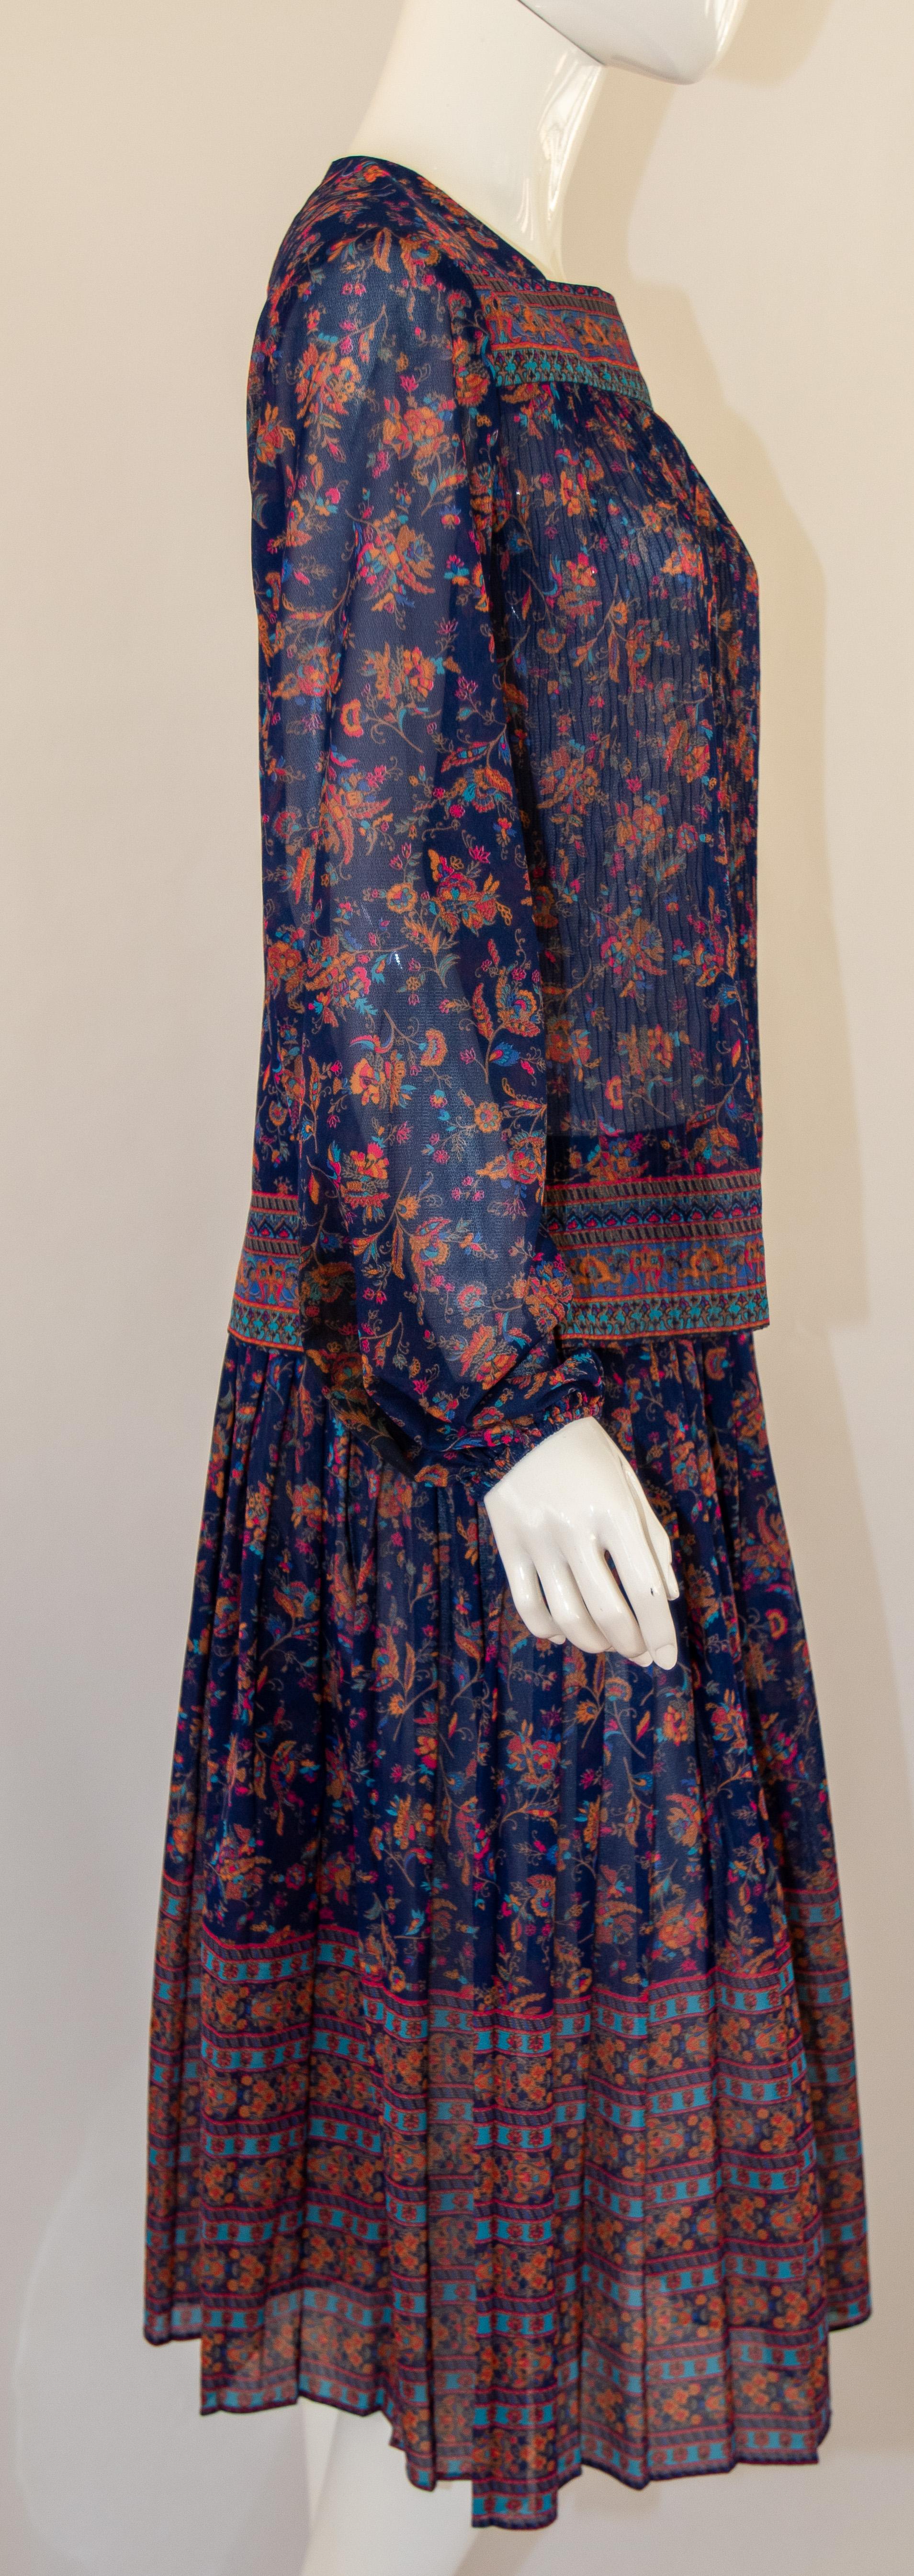 1970s Vintage Bohemian Floral Printed Dress Miss Magnin at I. Magnin For Sale 3